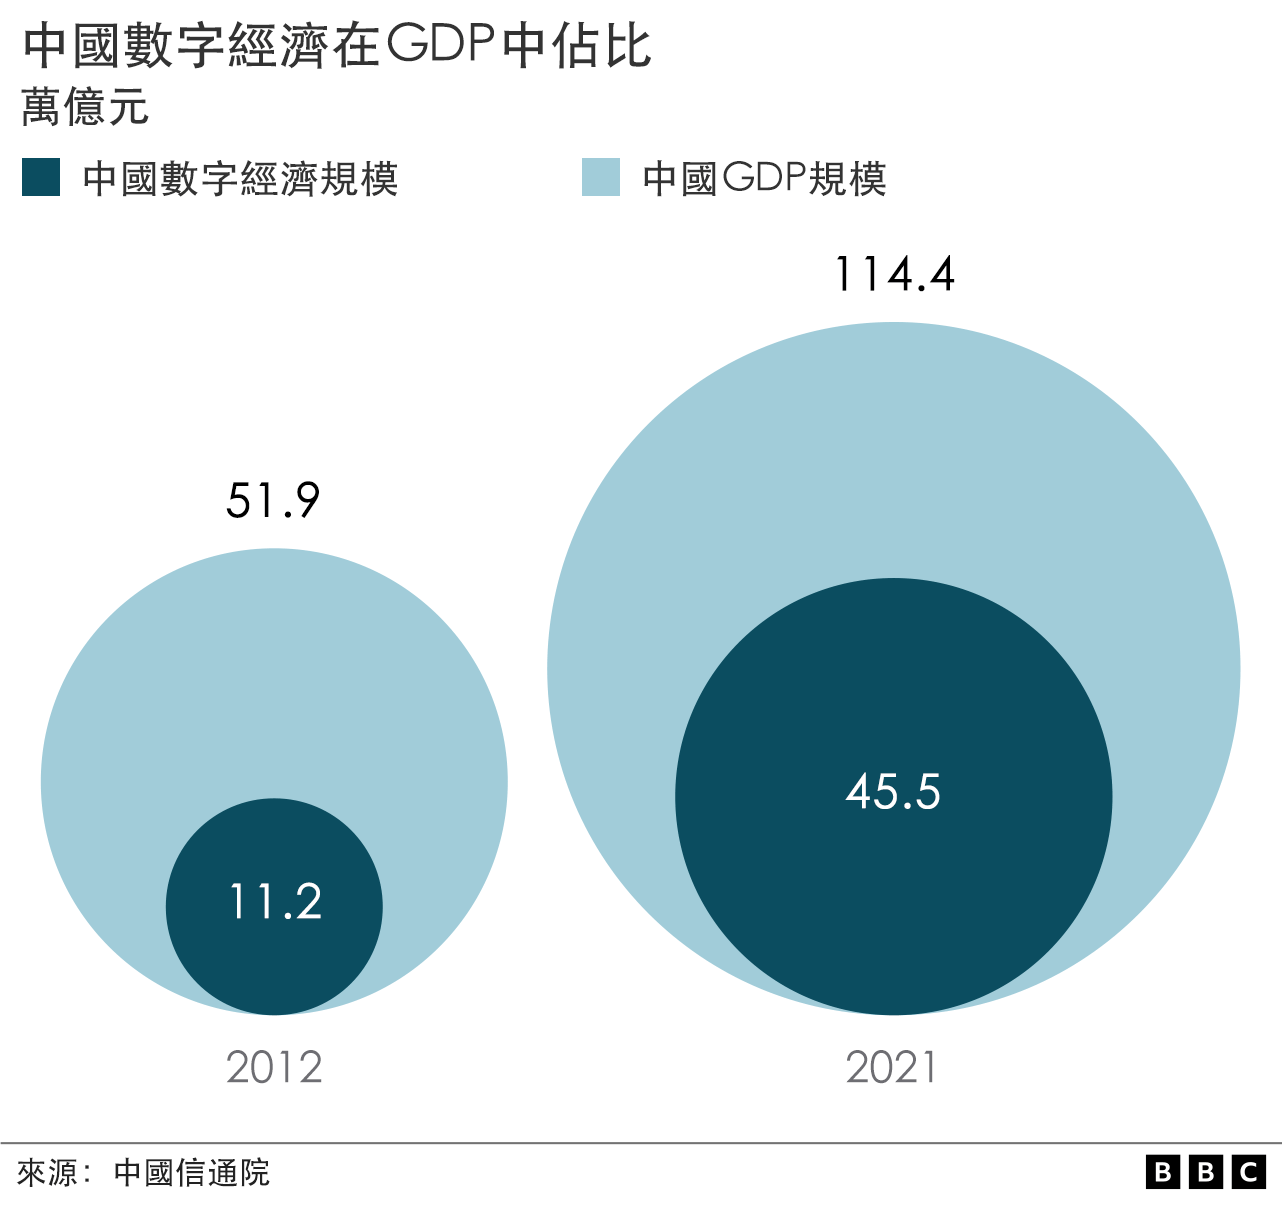 中國數字經濟在GDP中佔比